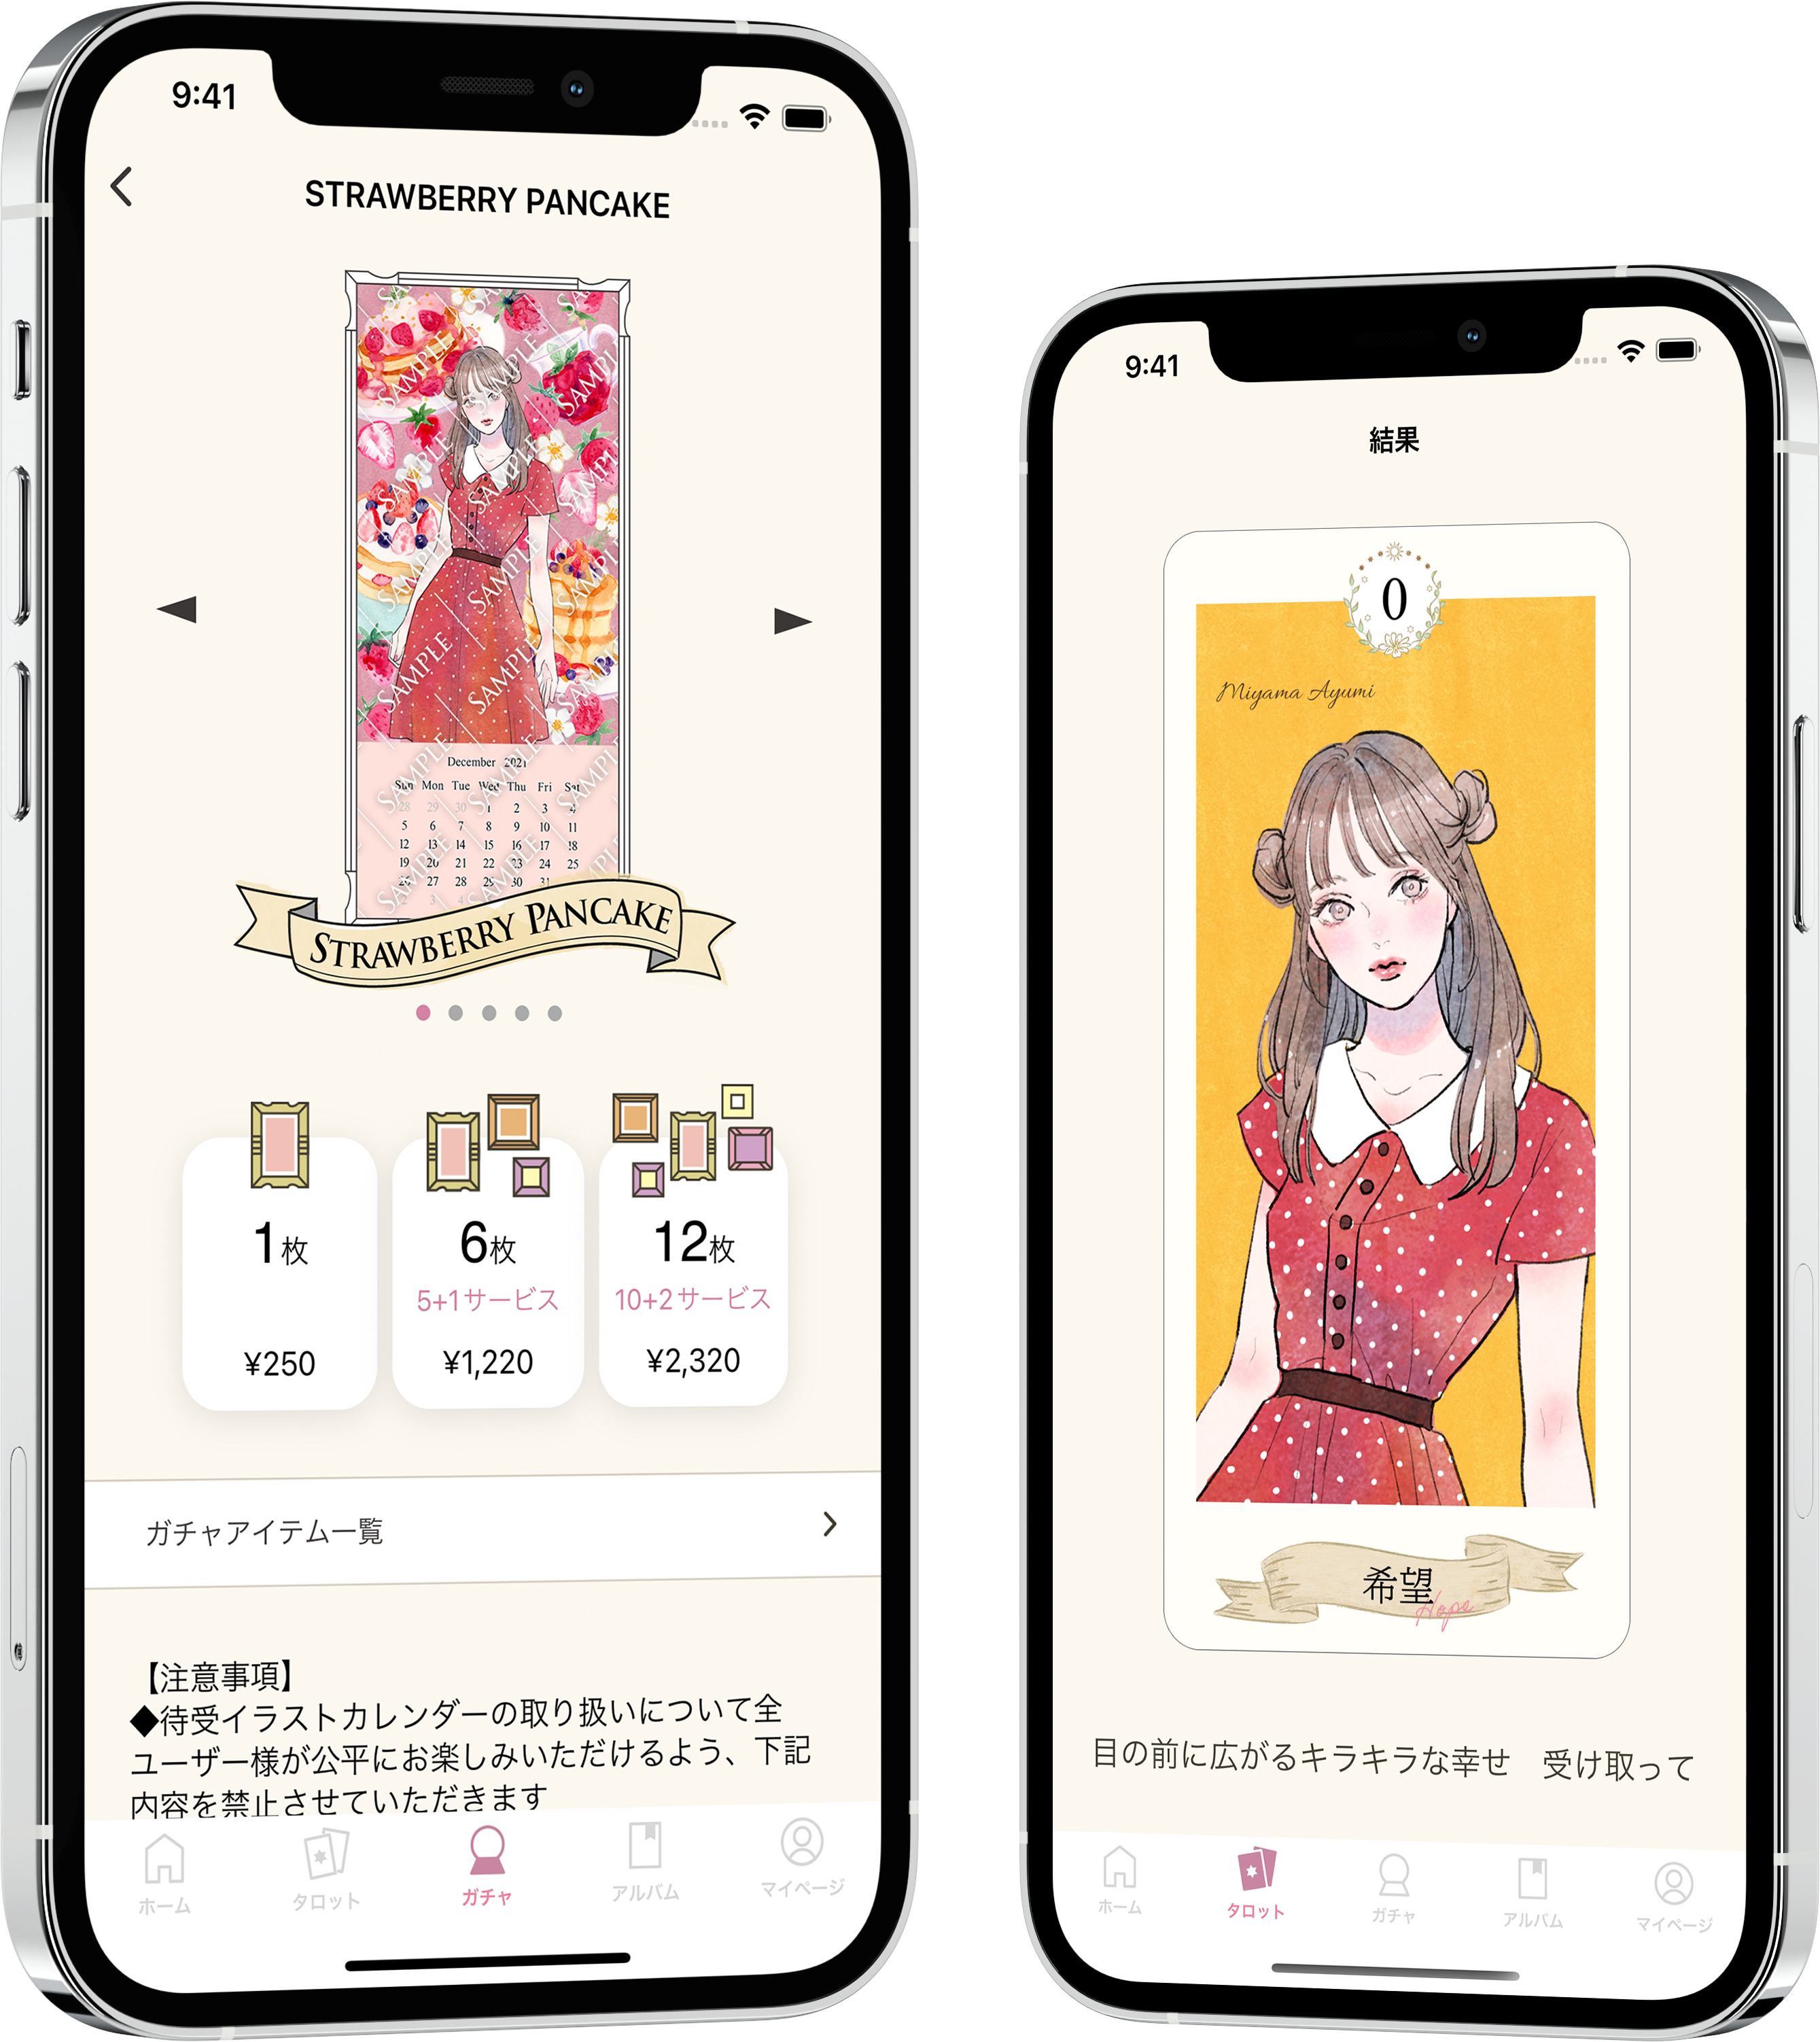 ミヤマアユミのイラストアプリトップ